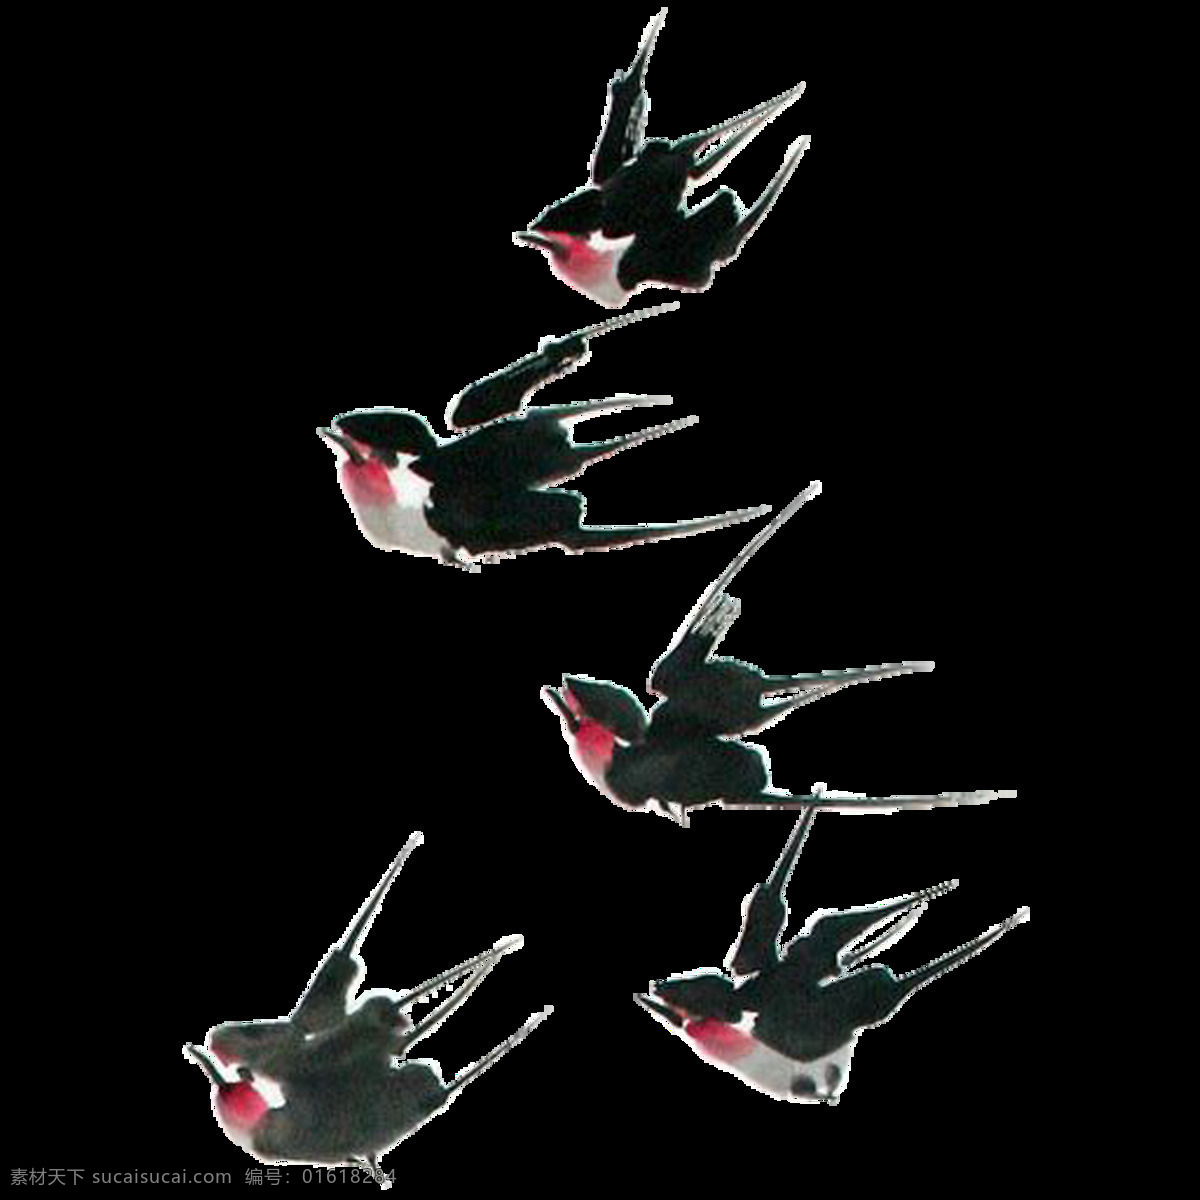 唯美 黑色 燕子 绘画 美观 飞动的燕子 生动 活泼 形象